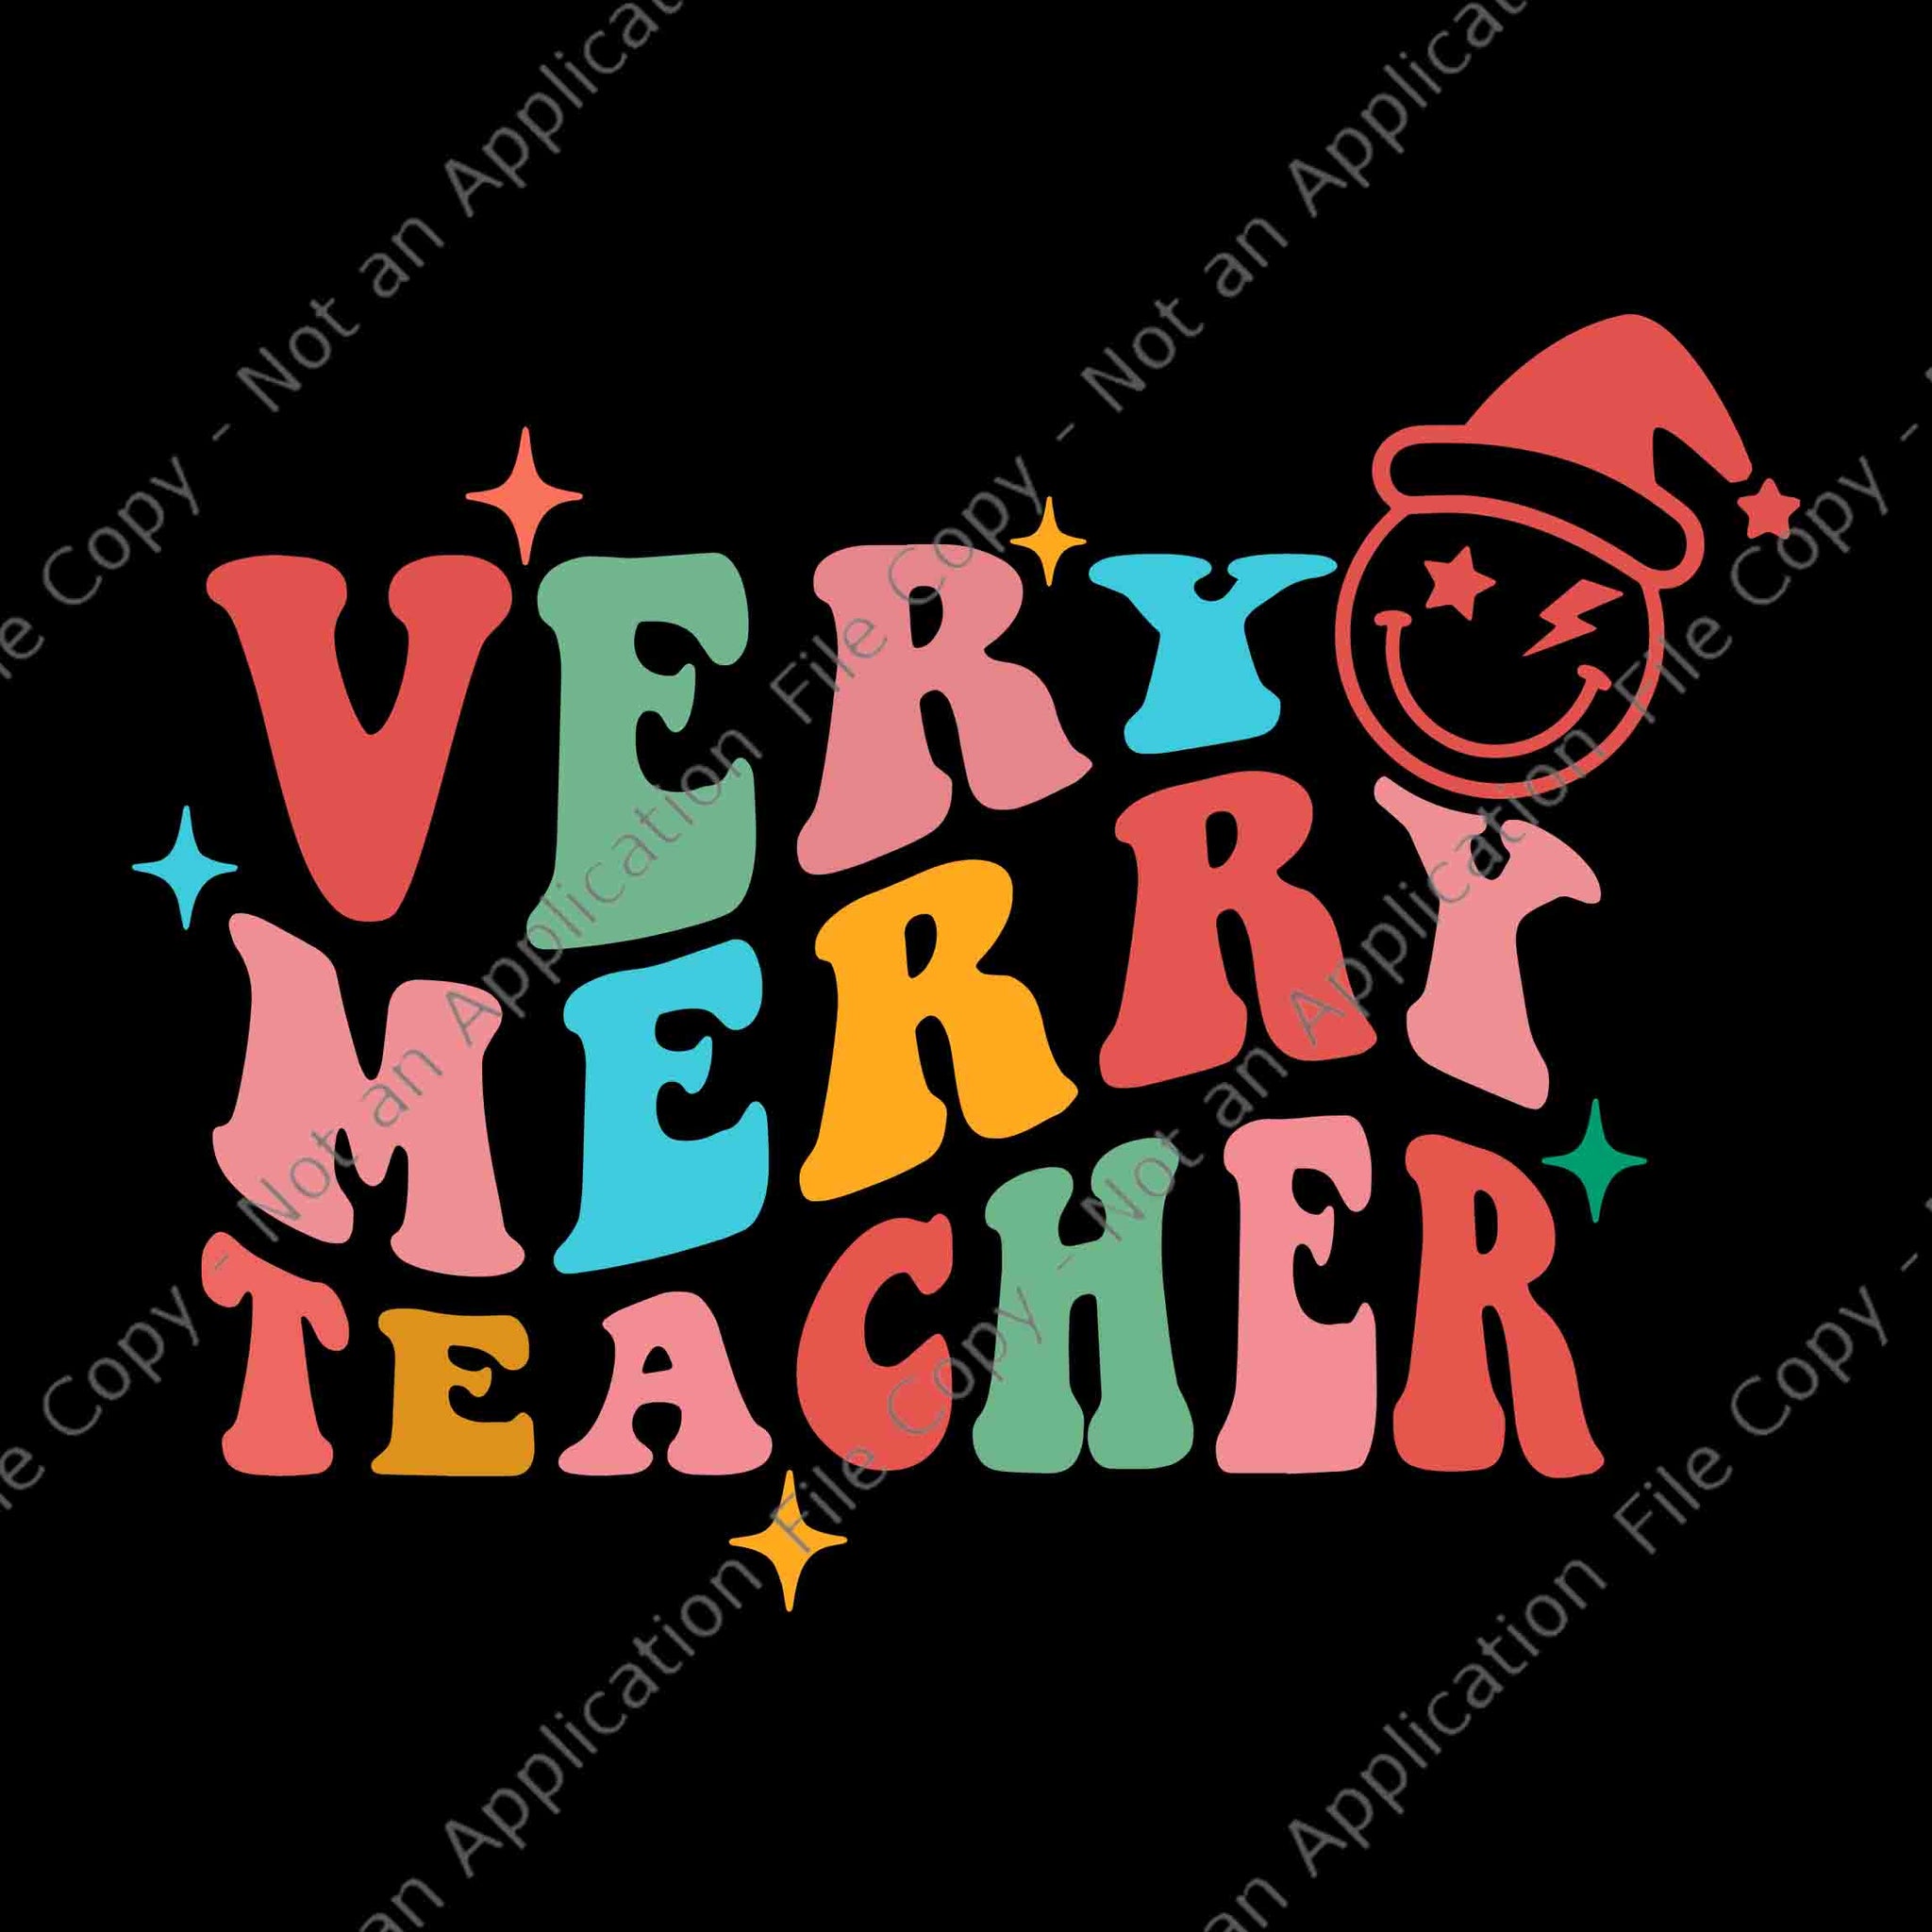 Very Merry Teacher Svg, Retro Groovy Santa Christmas Pajama Xmas Very Merry Teacher Svg, Christmas Svg, Santa Svg